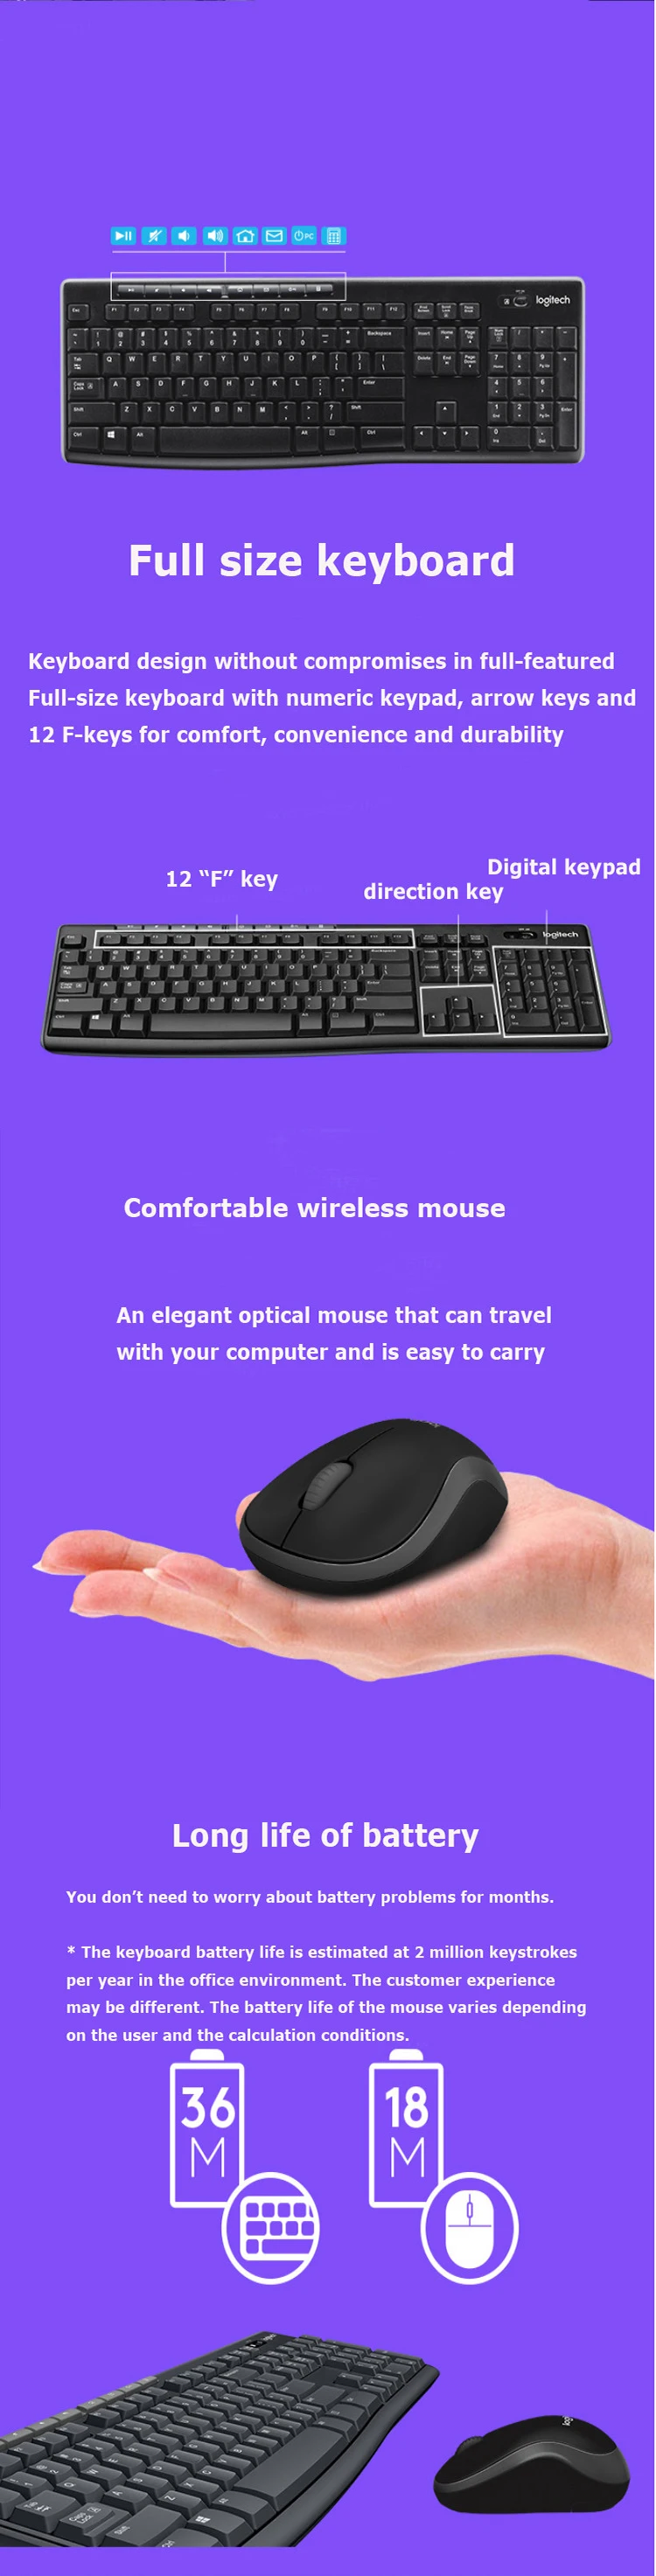 Беспроводная мышь с клавиатурой logitech MK270/M185 Combo 2,4 GHz USB приемник отключение-бесплатное подключение для ПК ноутбука домашнего использования